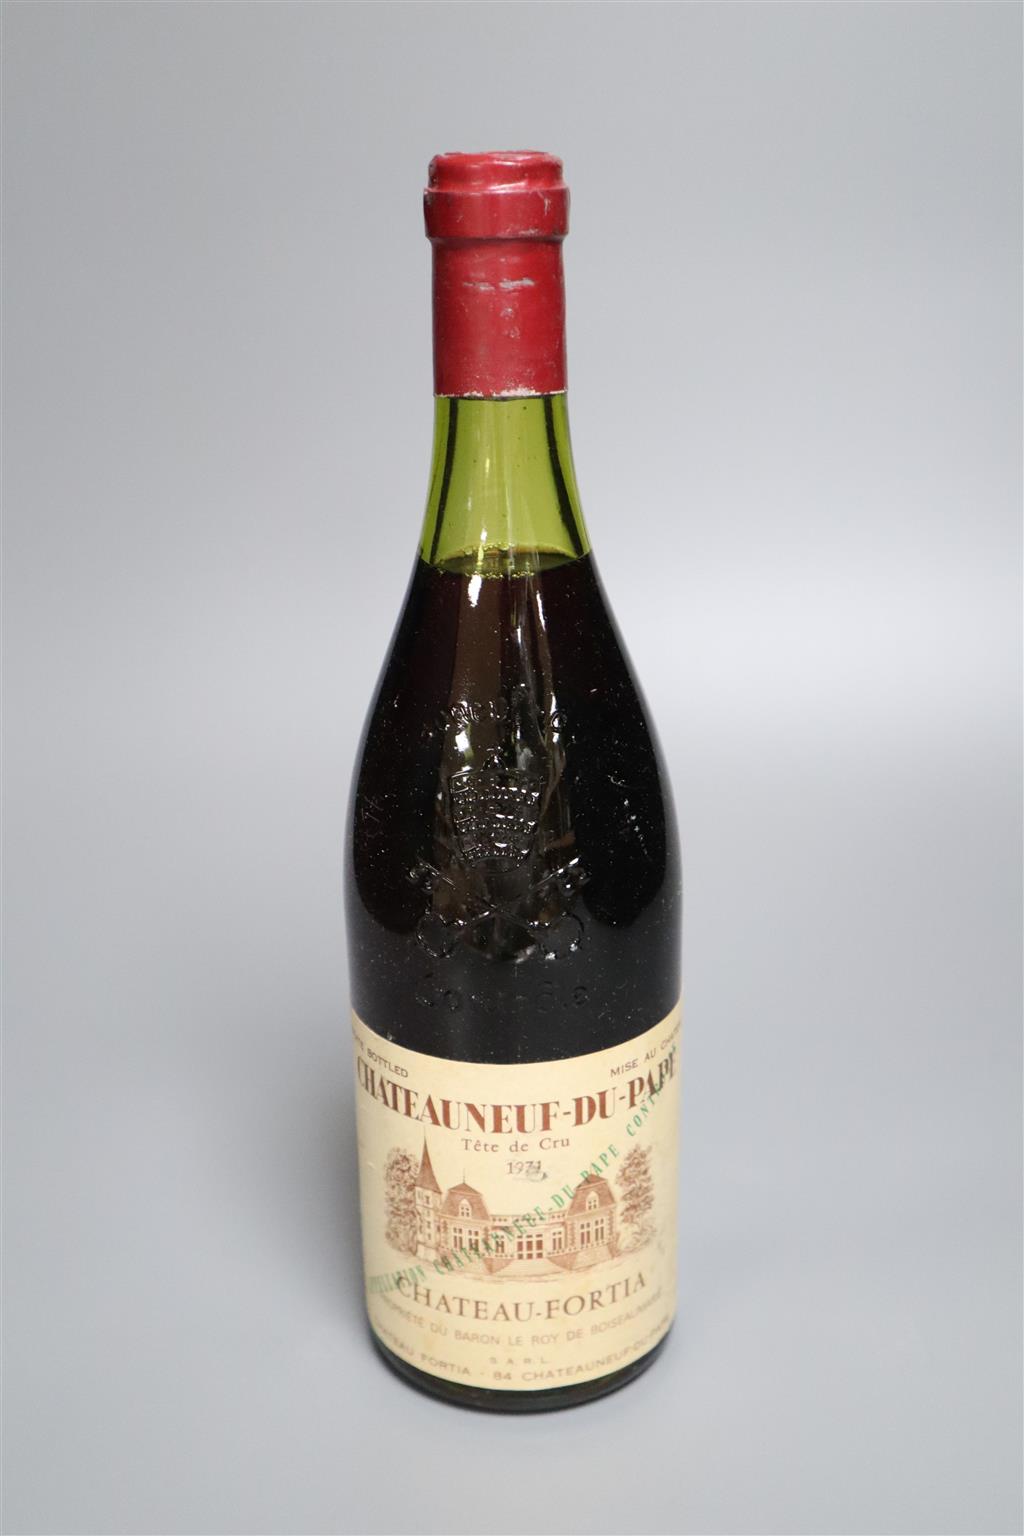 Six bottles of Tete Cru Chateau neuf du pape 1971